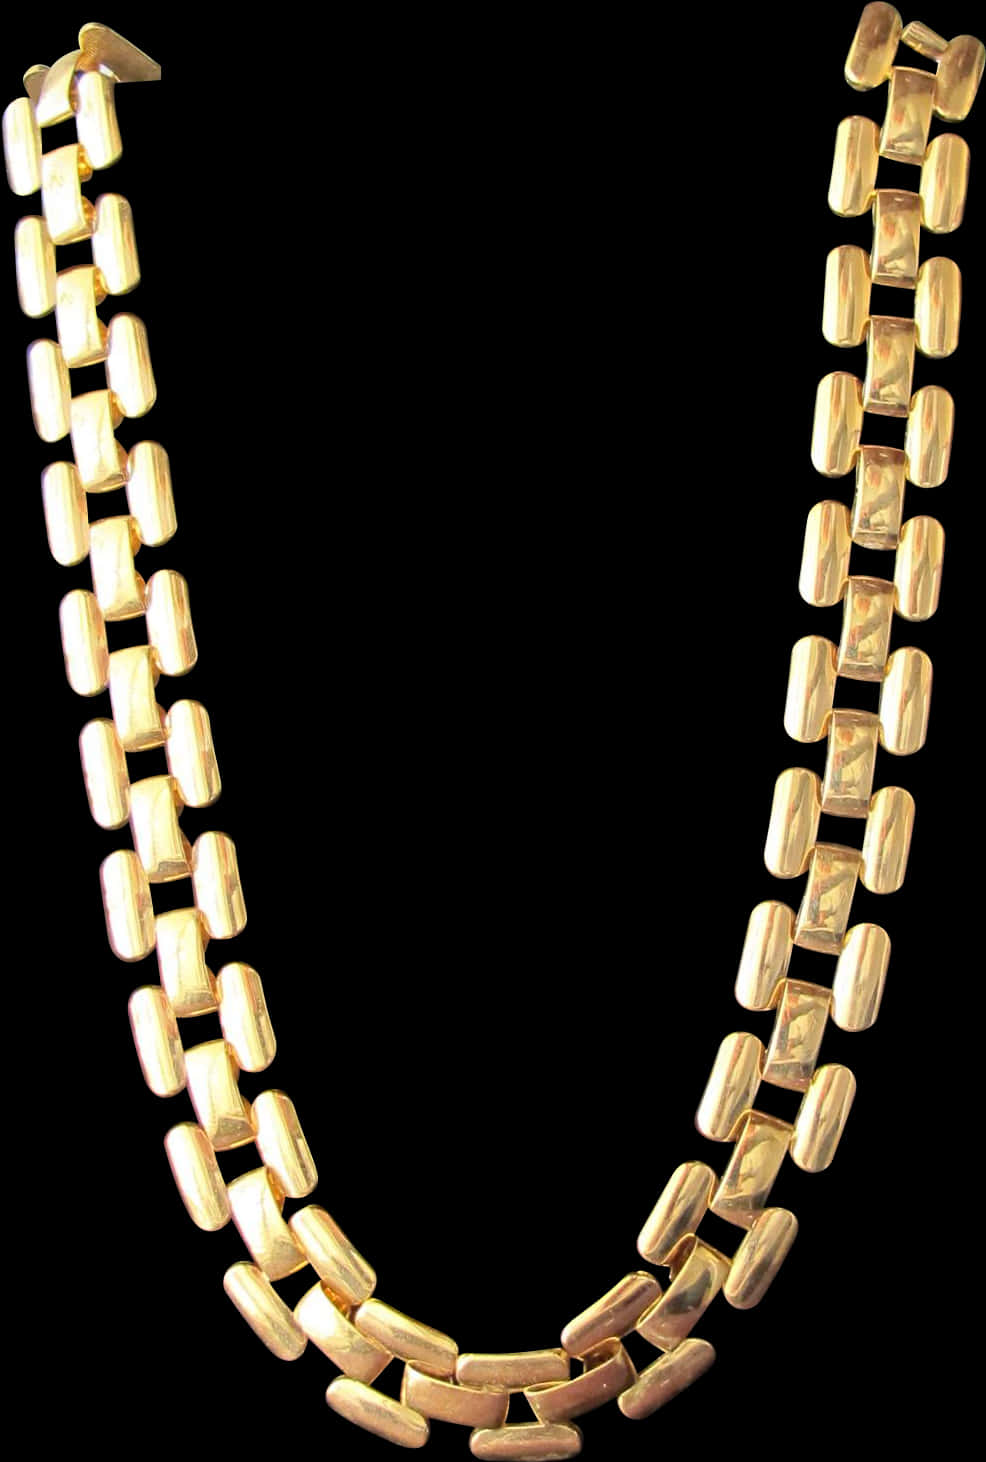 Gold Link Necklace Black Background PNG image